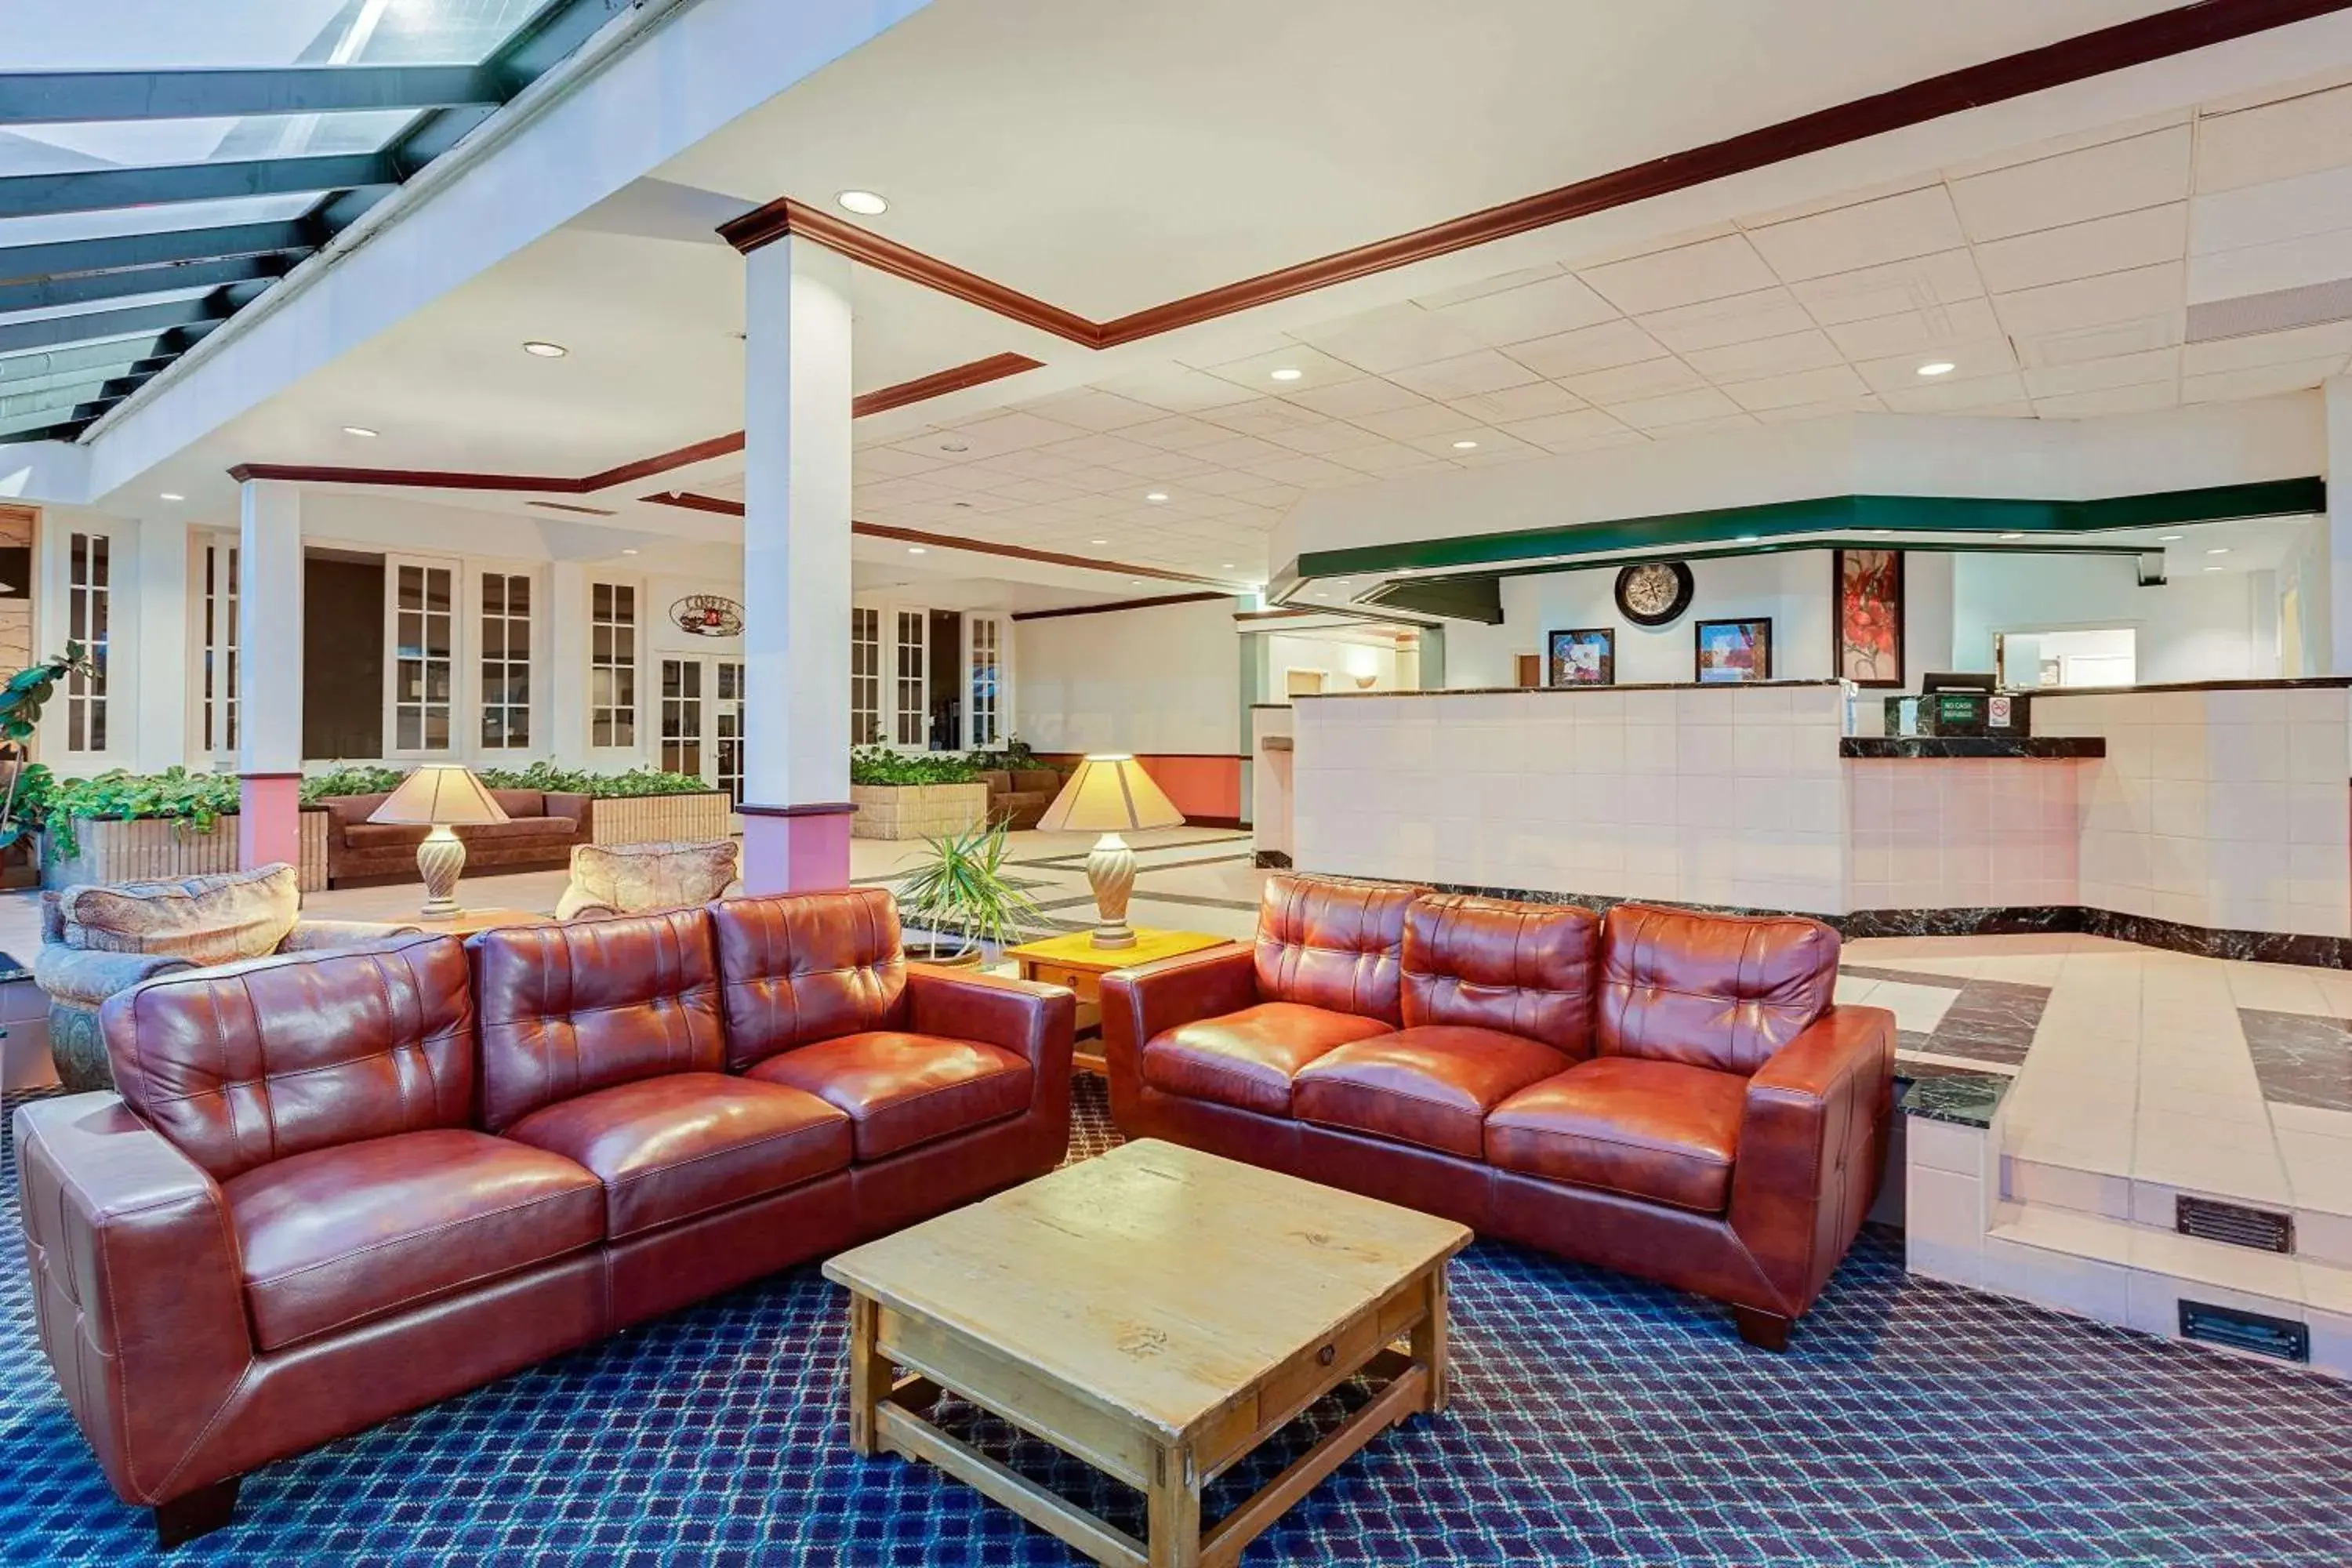 Lobby or reception, Lobby/Reception in Days Inn by Wyndham Bay City